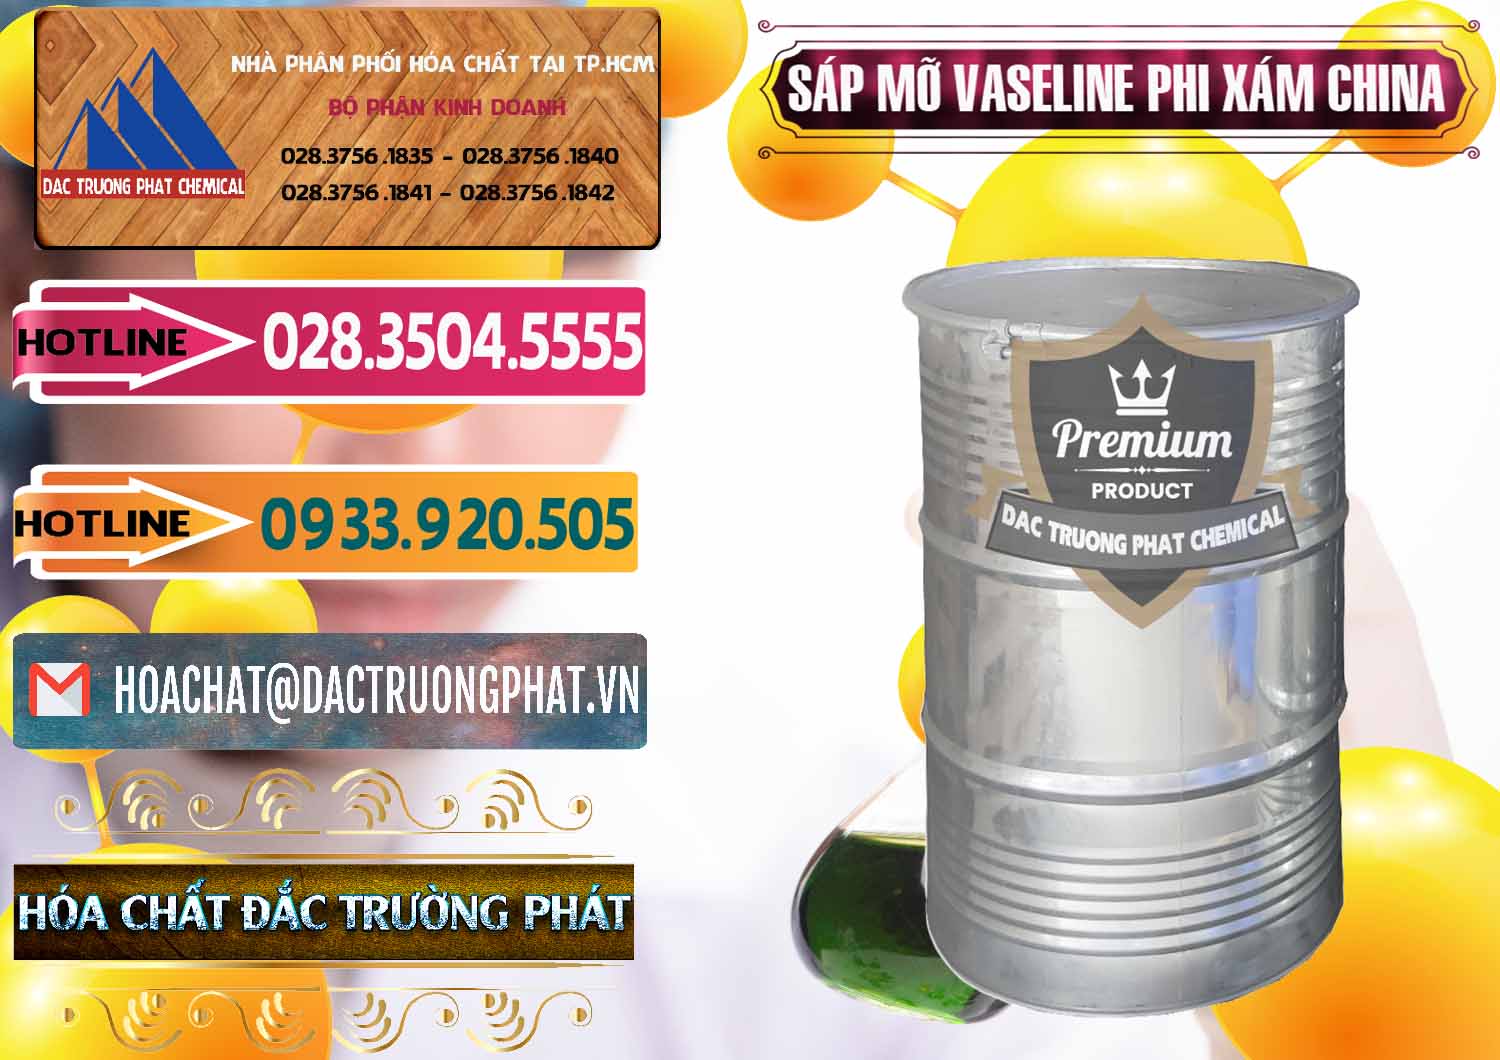 Nơi chuyên bán ( phân phối ) Sáp Mỡ Vaseline Phi Xám Trung Quốc China - 0291 - Đơn vị cung cấp - kinh doanh hóa chất tại TP.HCM - dactruongphat.vn